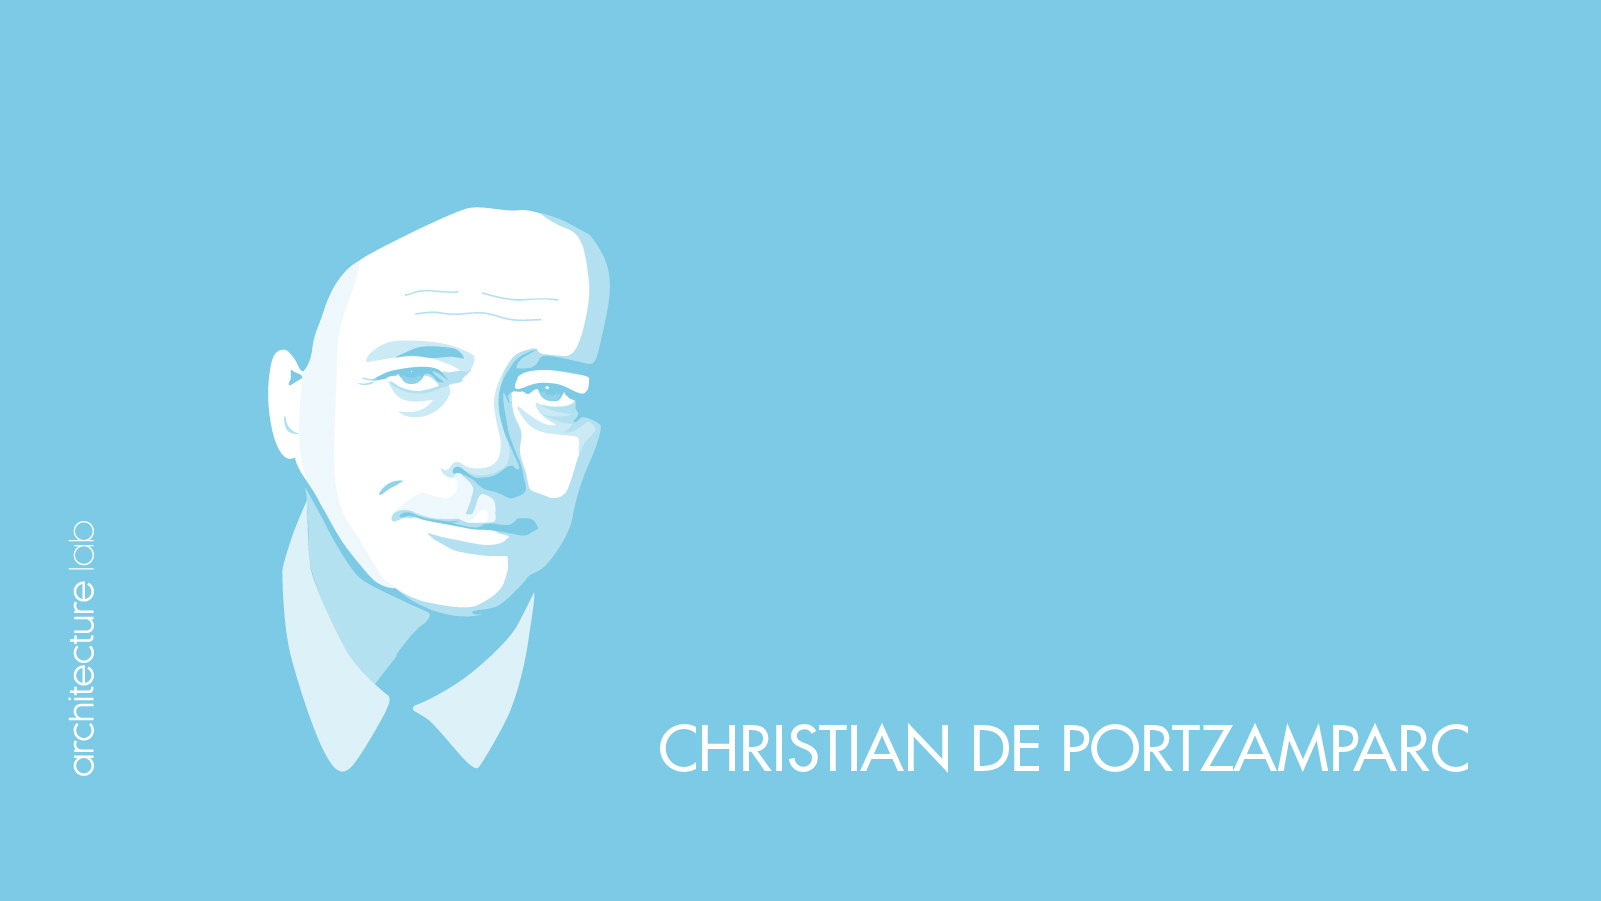 3. Christian de portzamparc